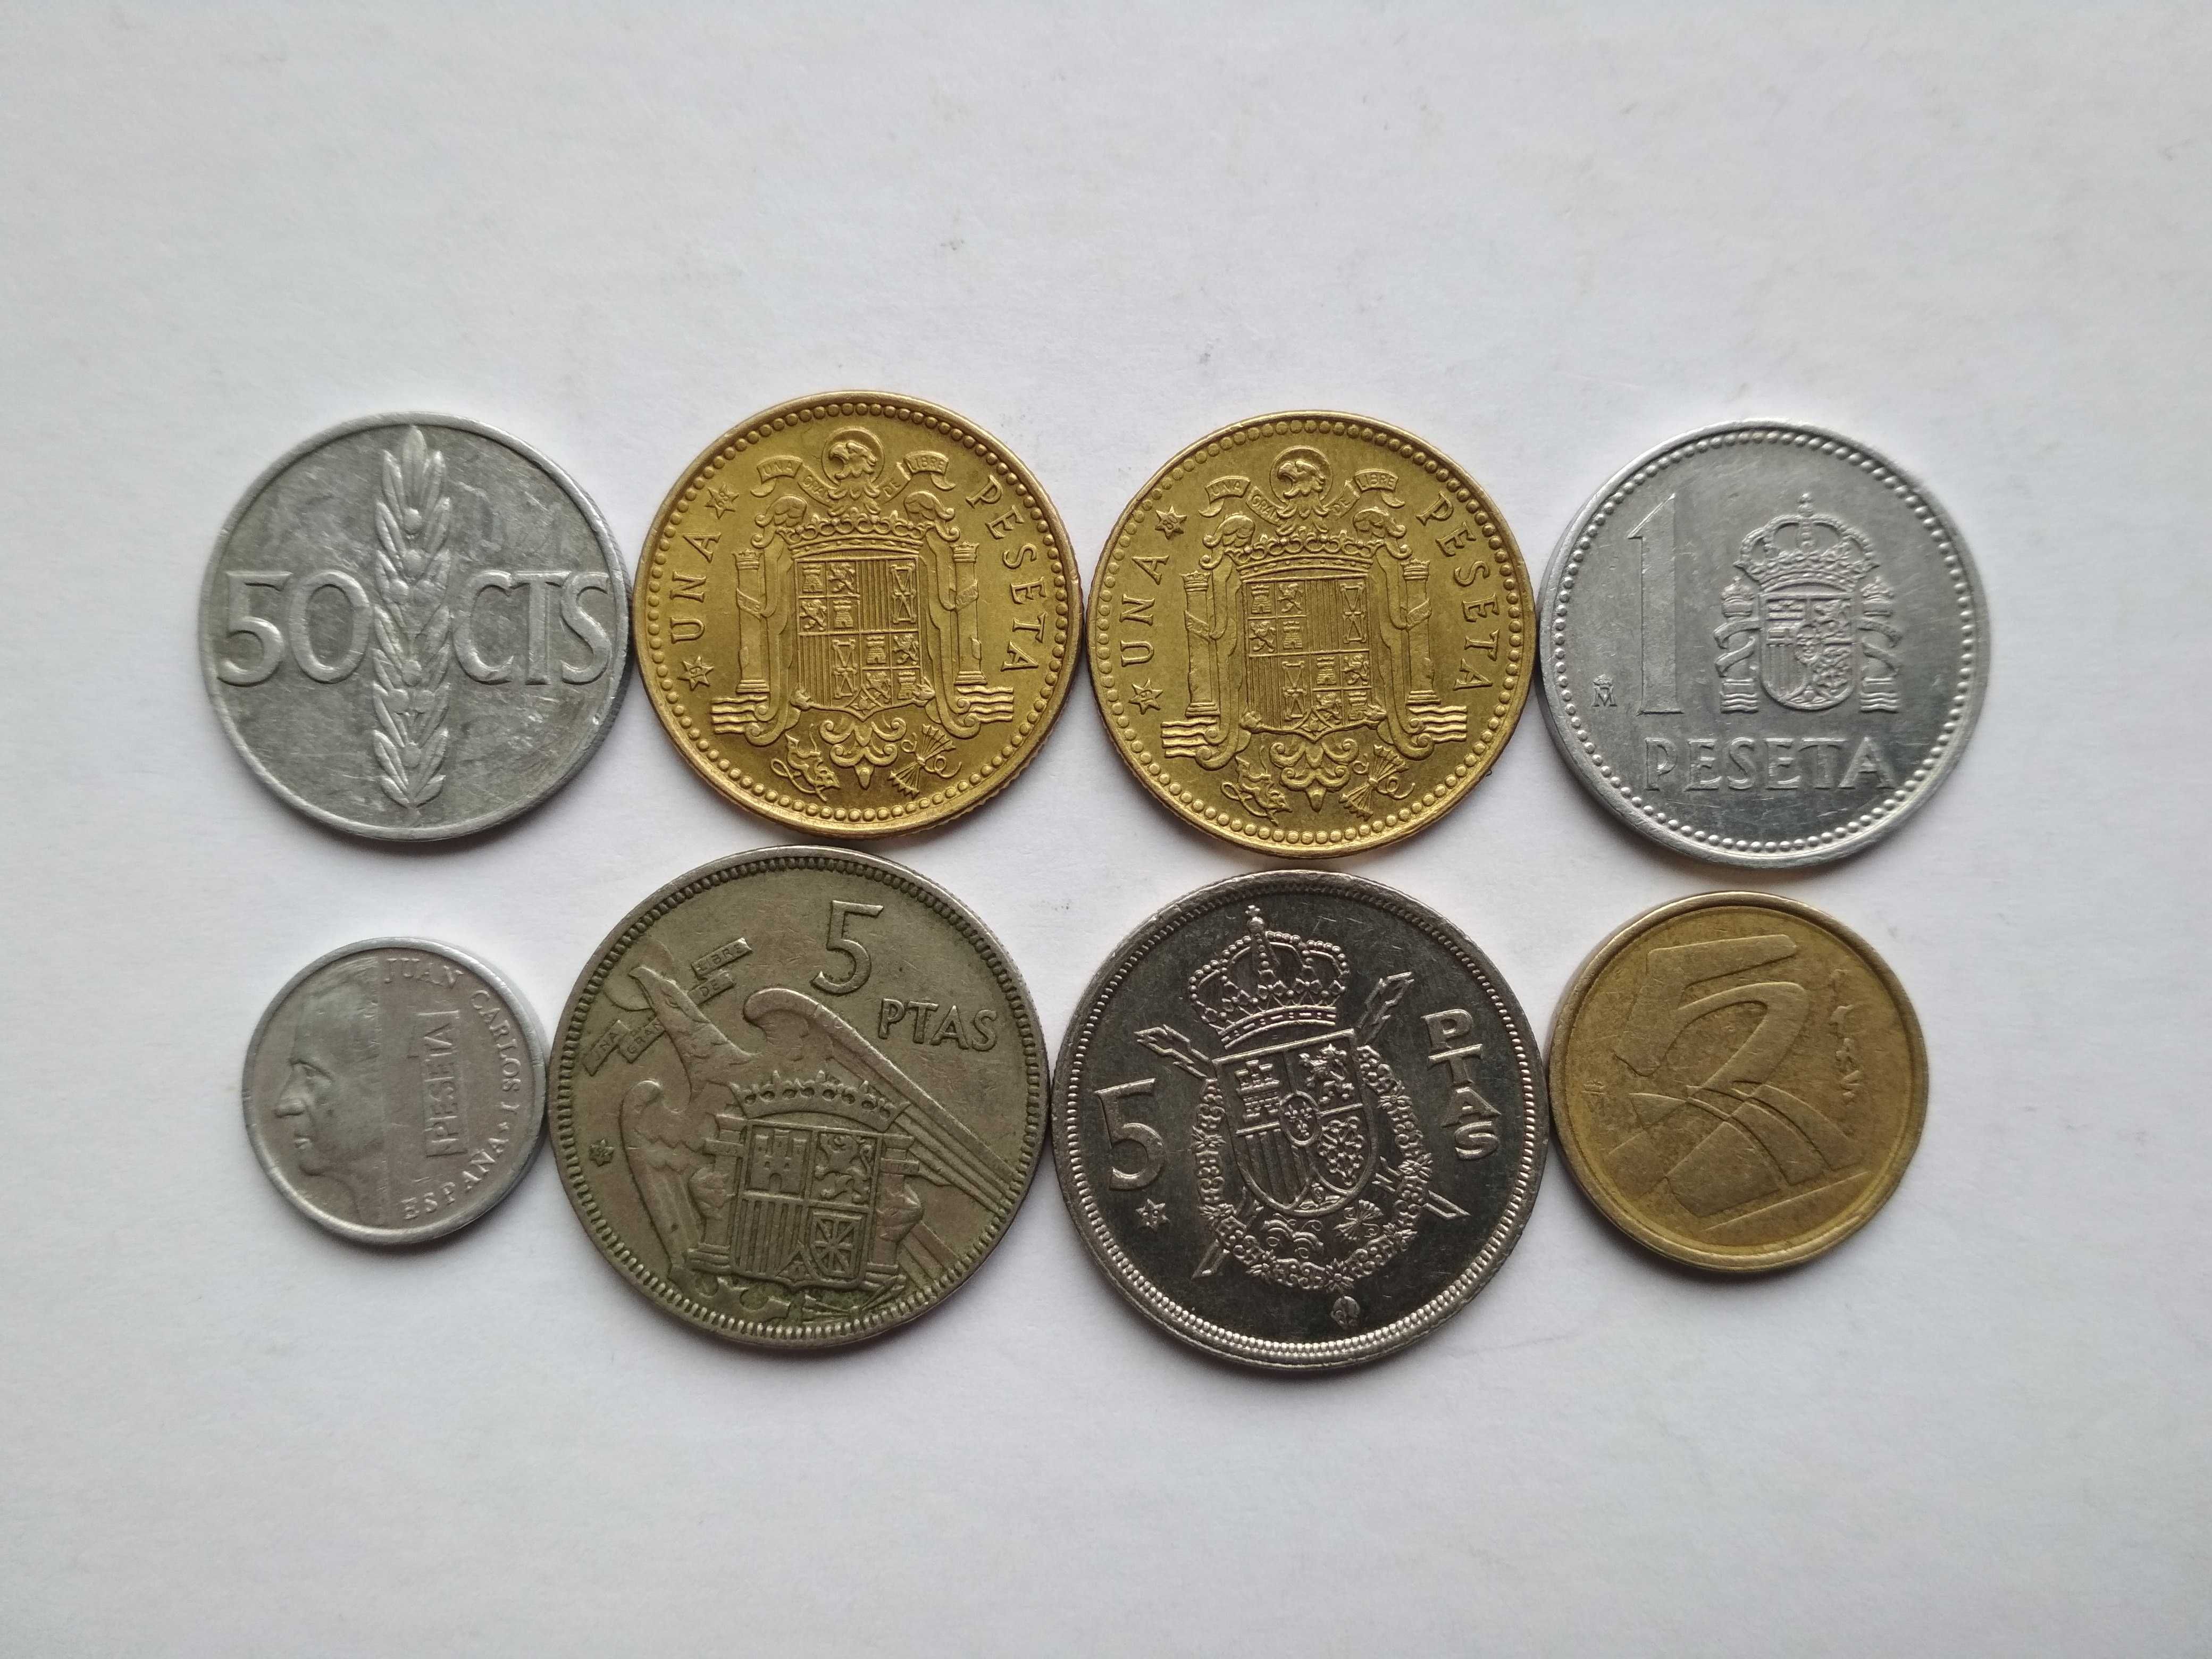 Монеты   Испании